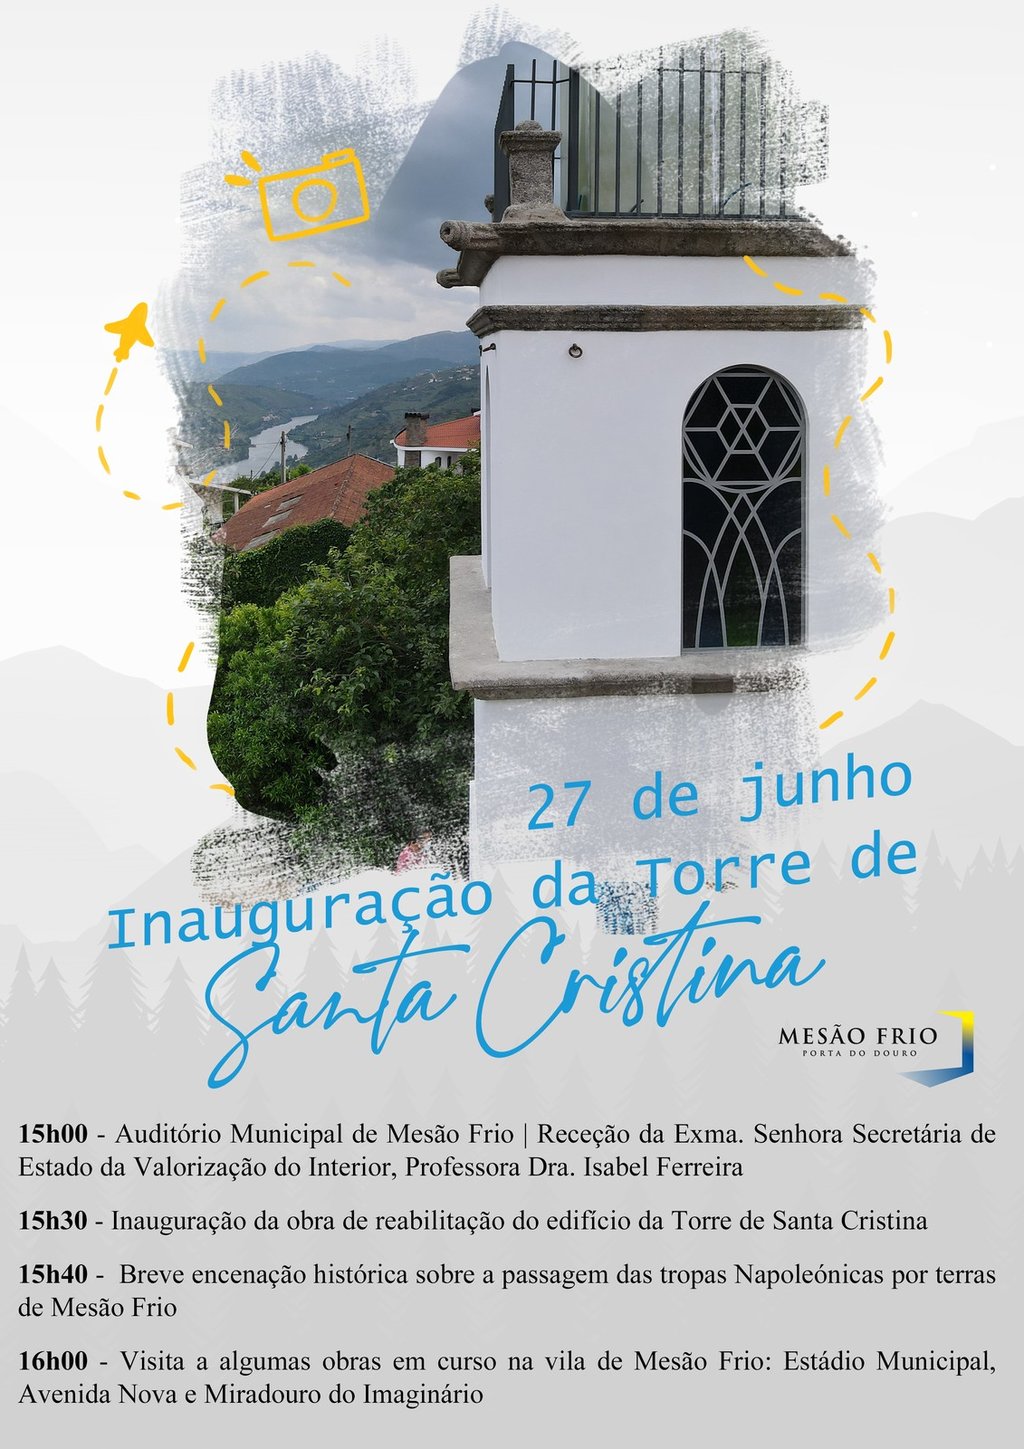 Inauguração da obra de reabilitação da Torre de Santa Cristina